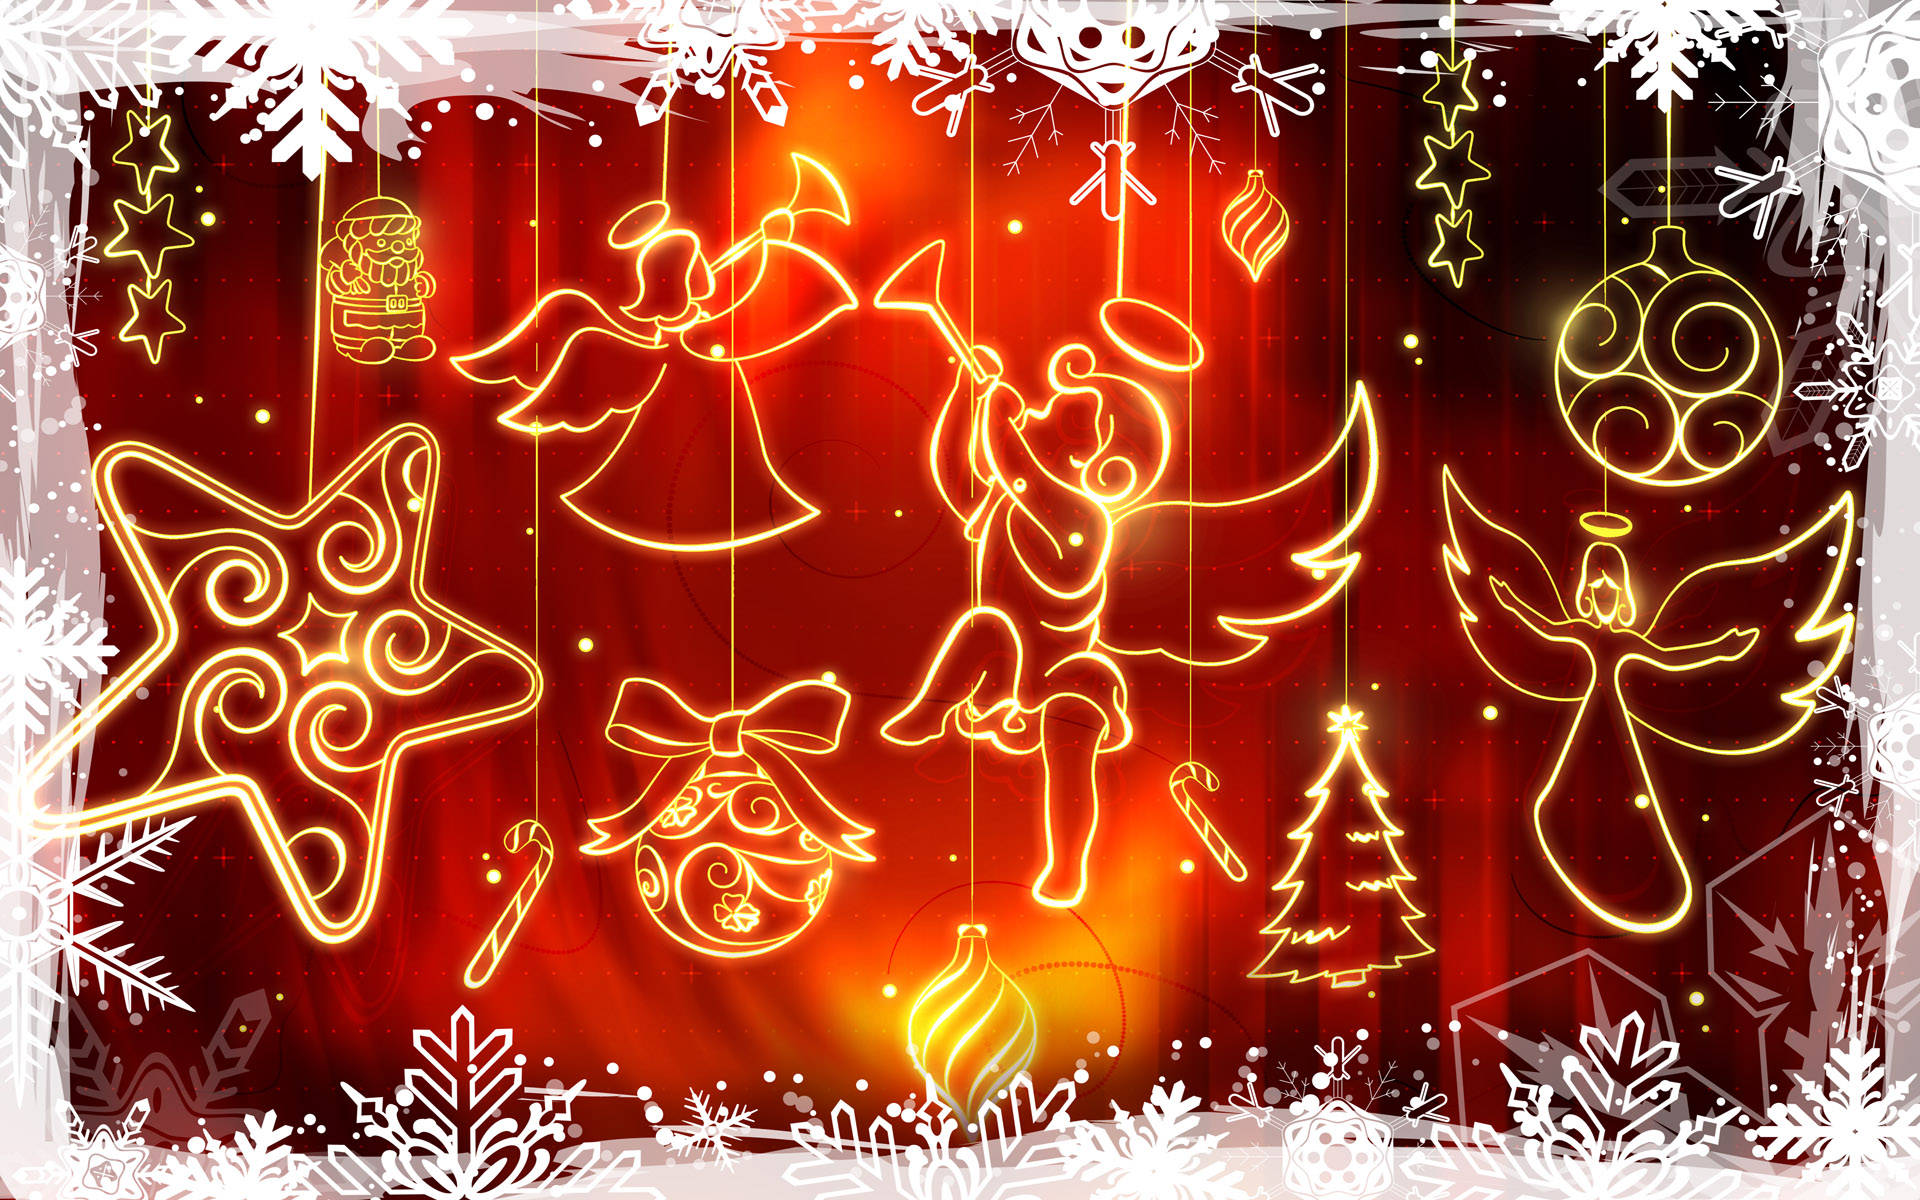 Feieredie Feiertage Mit Weihnachten Im Breitbildformat. Wallpaper